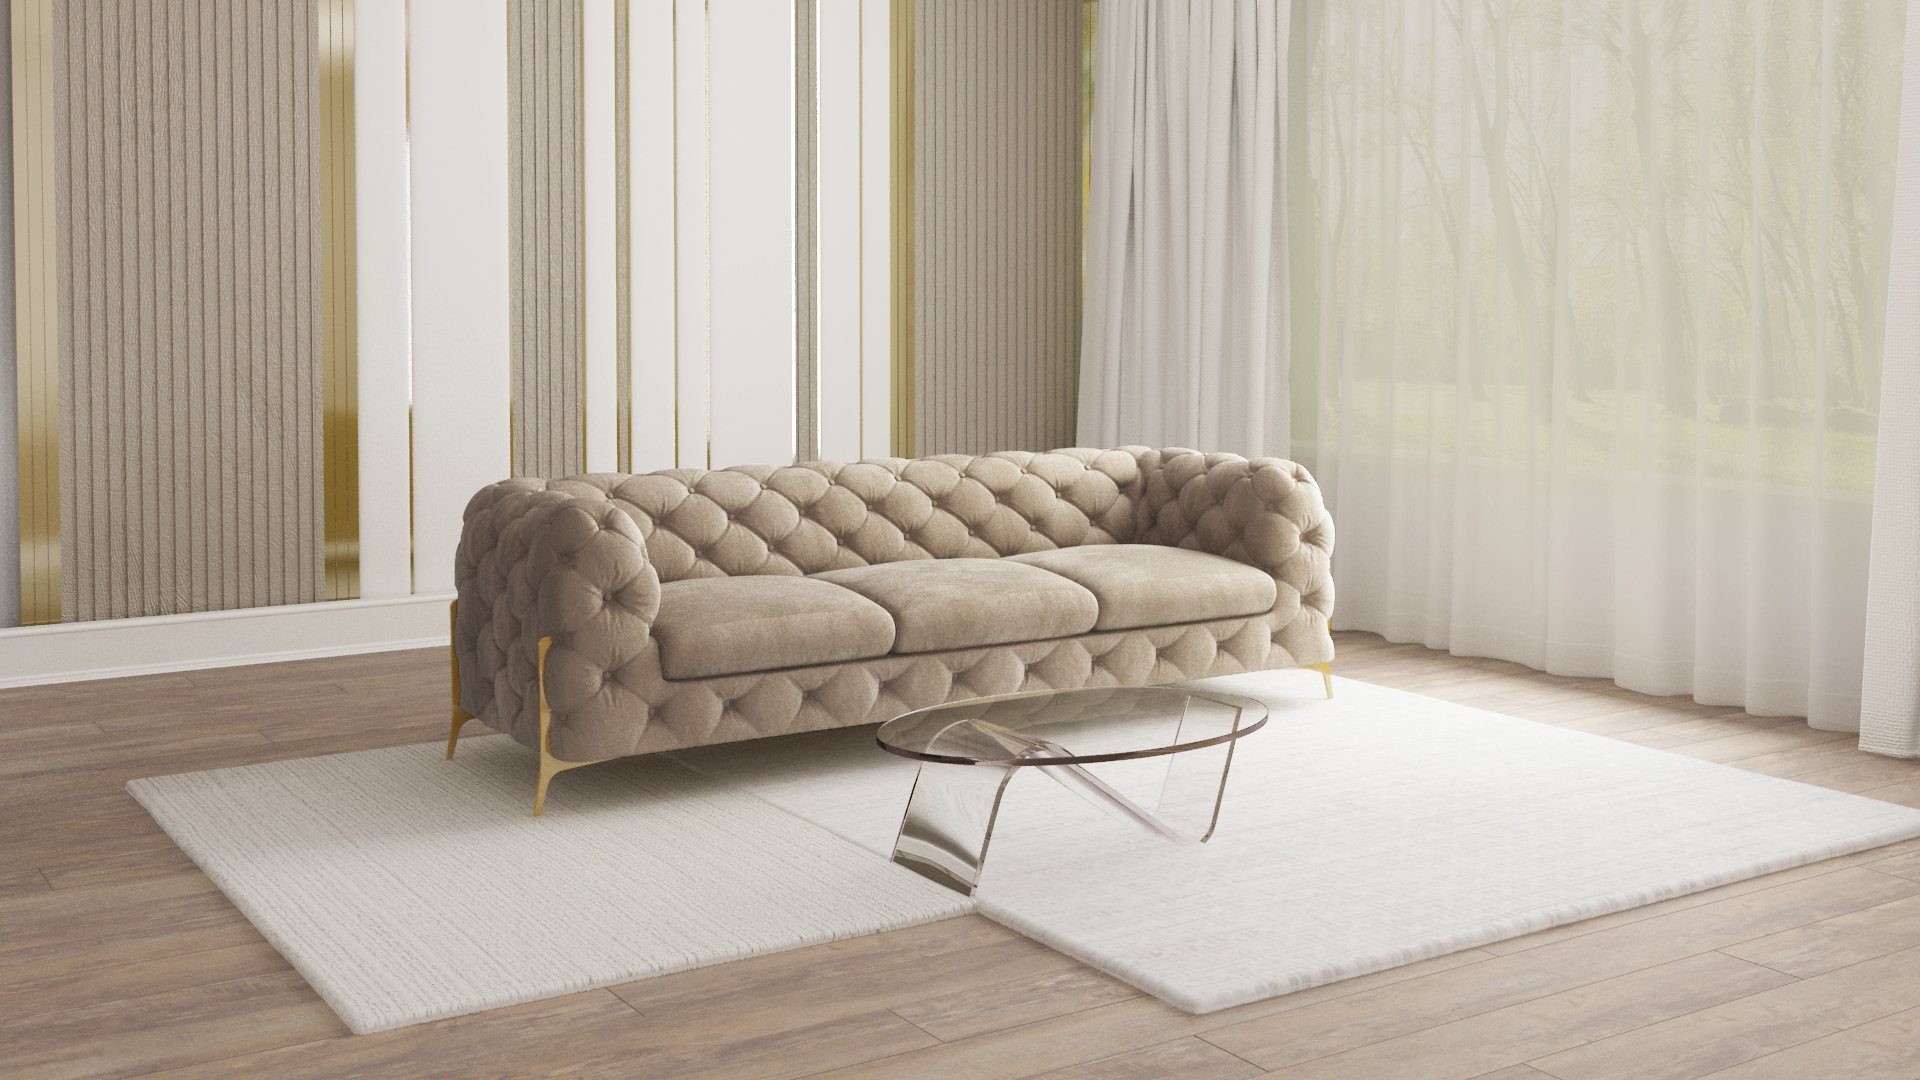 S-Style Мебель 3-Sitzer Ashley Chesterfield Sofa mit Goldene Metall Füßen, mit Wellenfederung